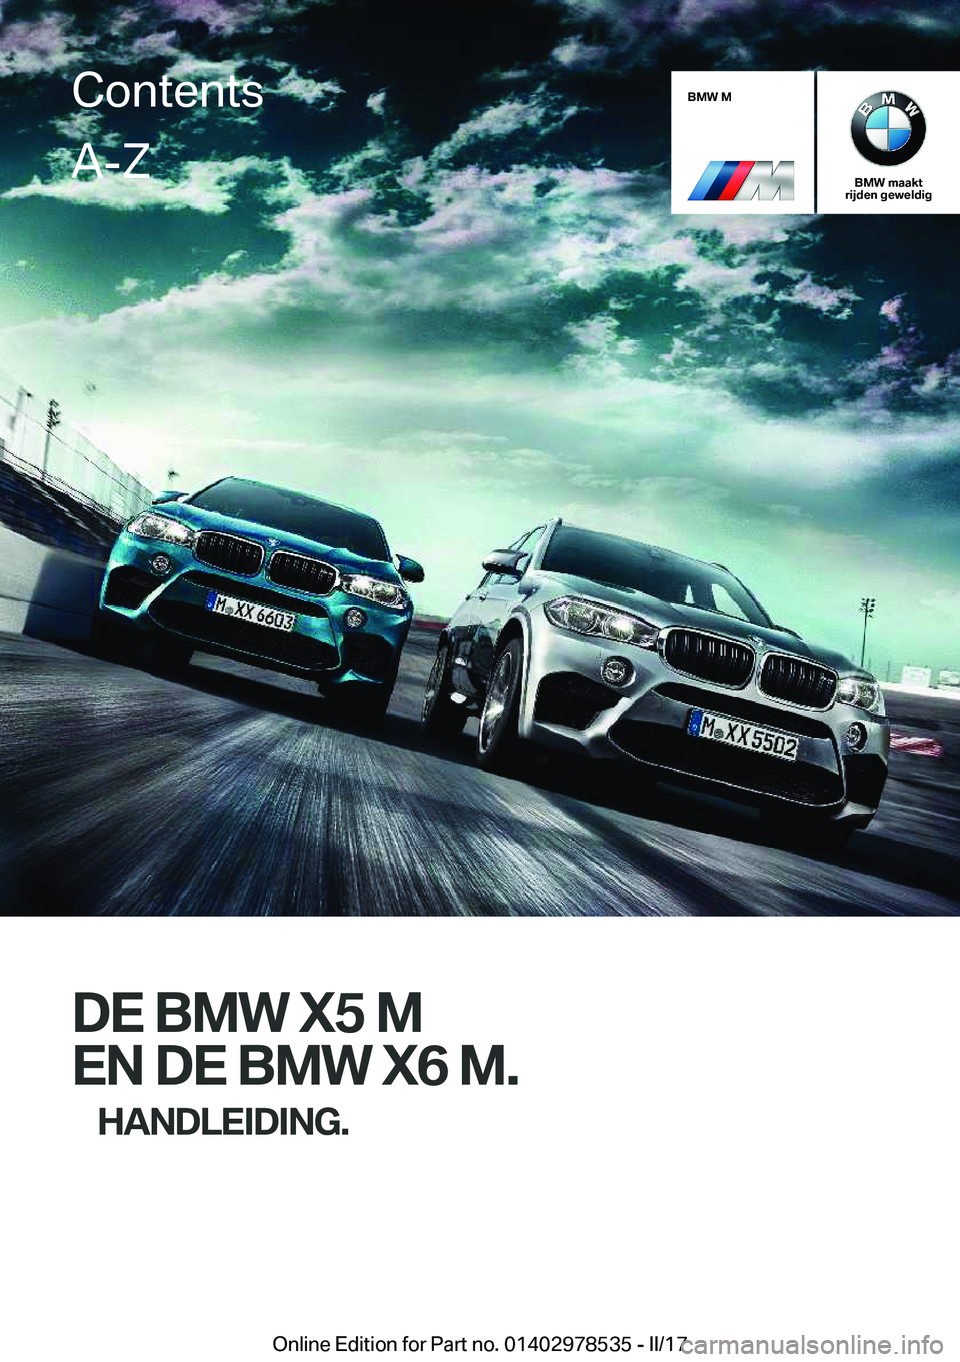 BMW X6 M 2017  Instructieboekjes (in Dutch) �B�M�W��M
�B�M�W��m�a�a�k�t
�r�i�j�d�e�n��g�e�w�e�l�d�i�g
�D�E��B�M�W��X�5��M
�E�N��D�E��B�M�W��X�6��M�. �H�A�N�D�L�E�I�D�I�N�G�.
�C�o�n�t�e�n�t�s�A�-�Z
�O�n�l�i�n�e� �E�d�i�t�i�o�n� �f�o�r�